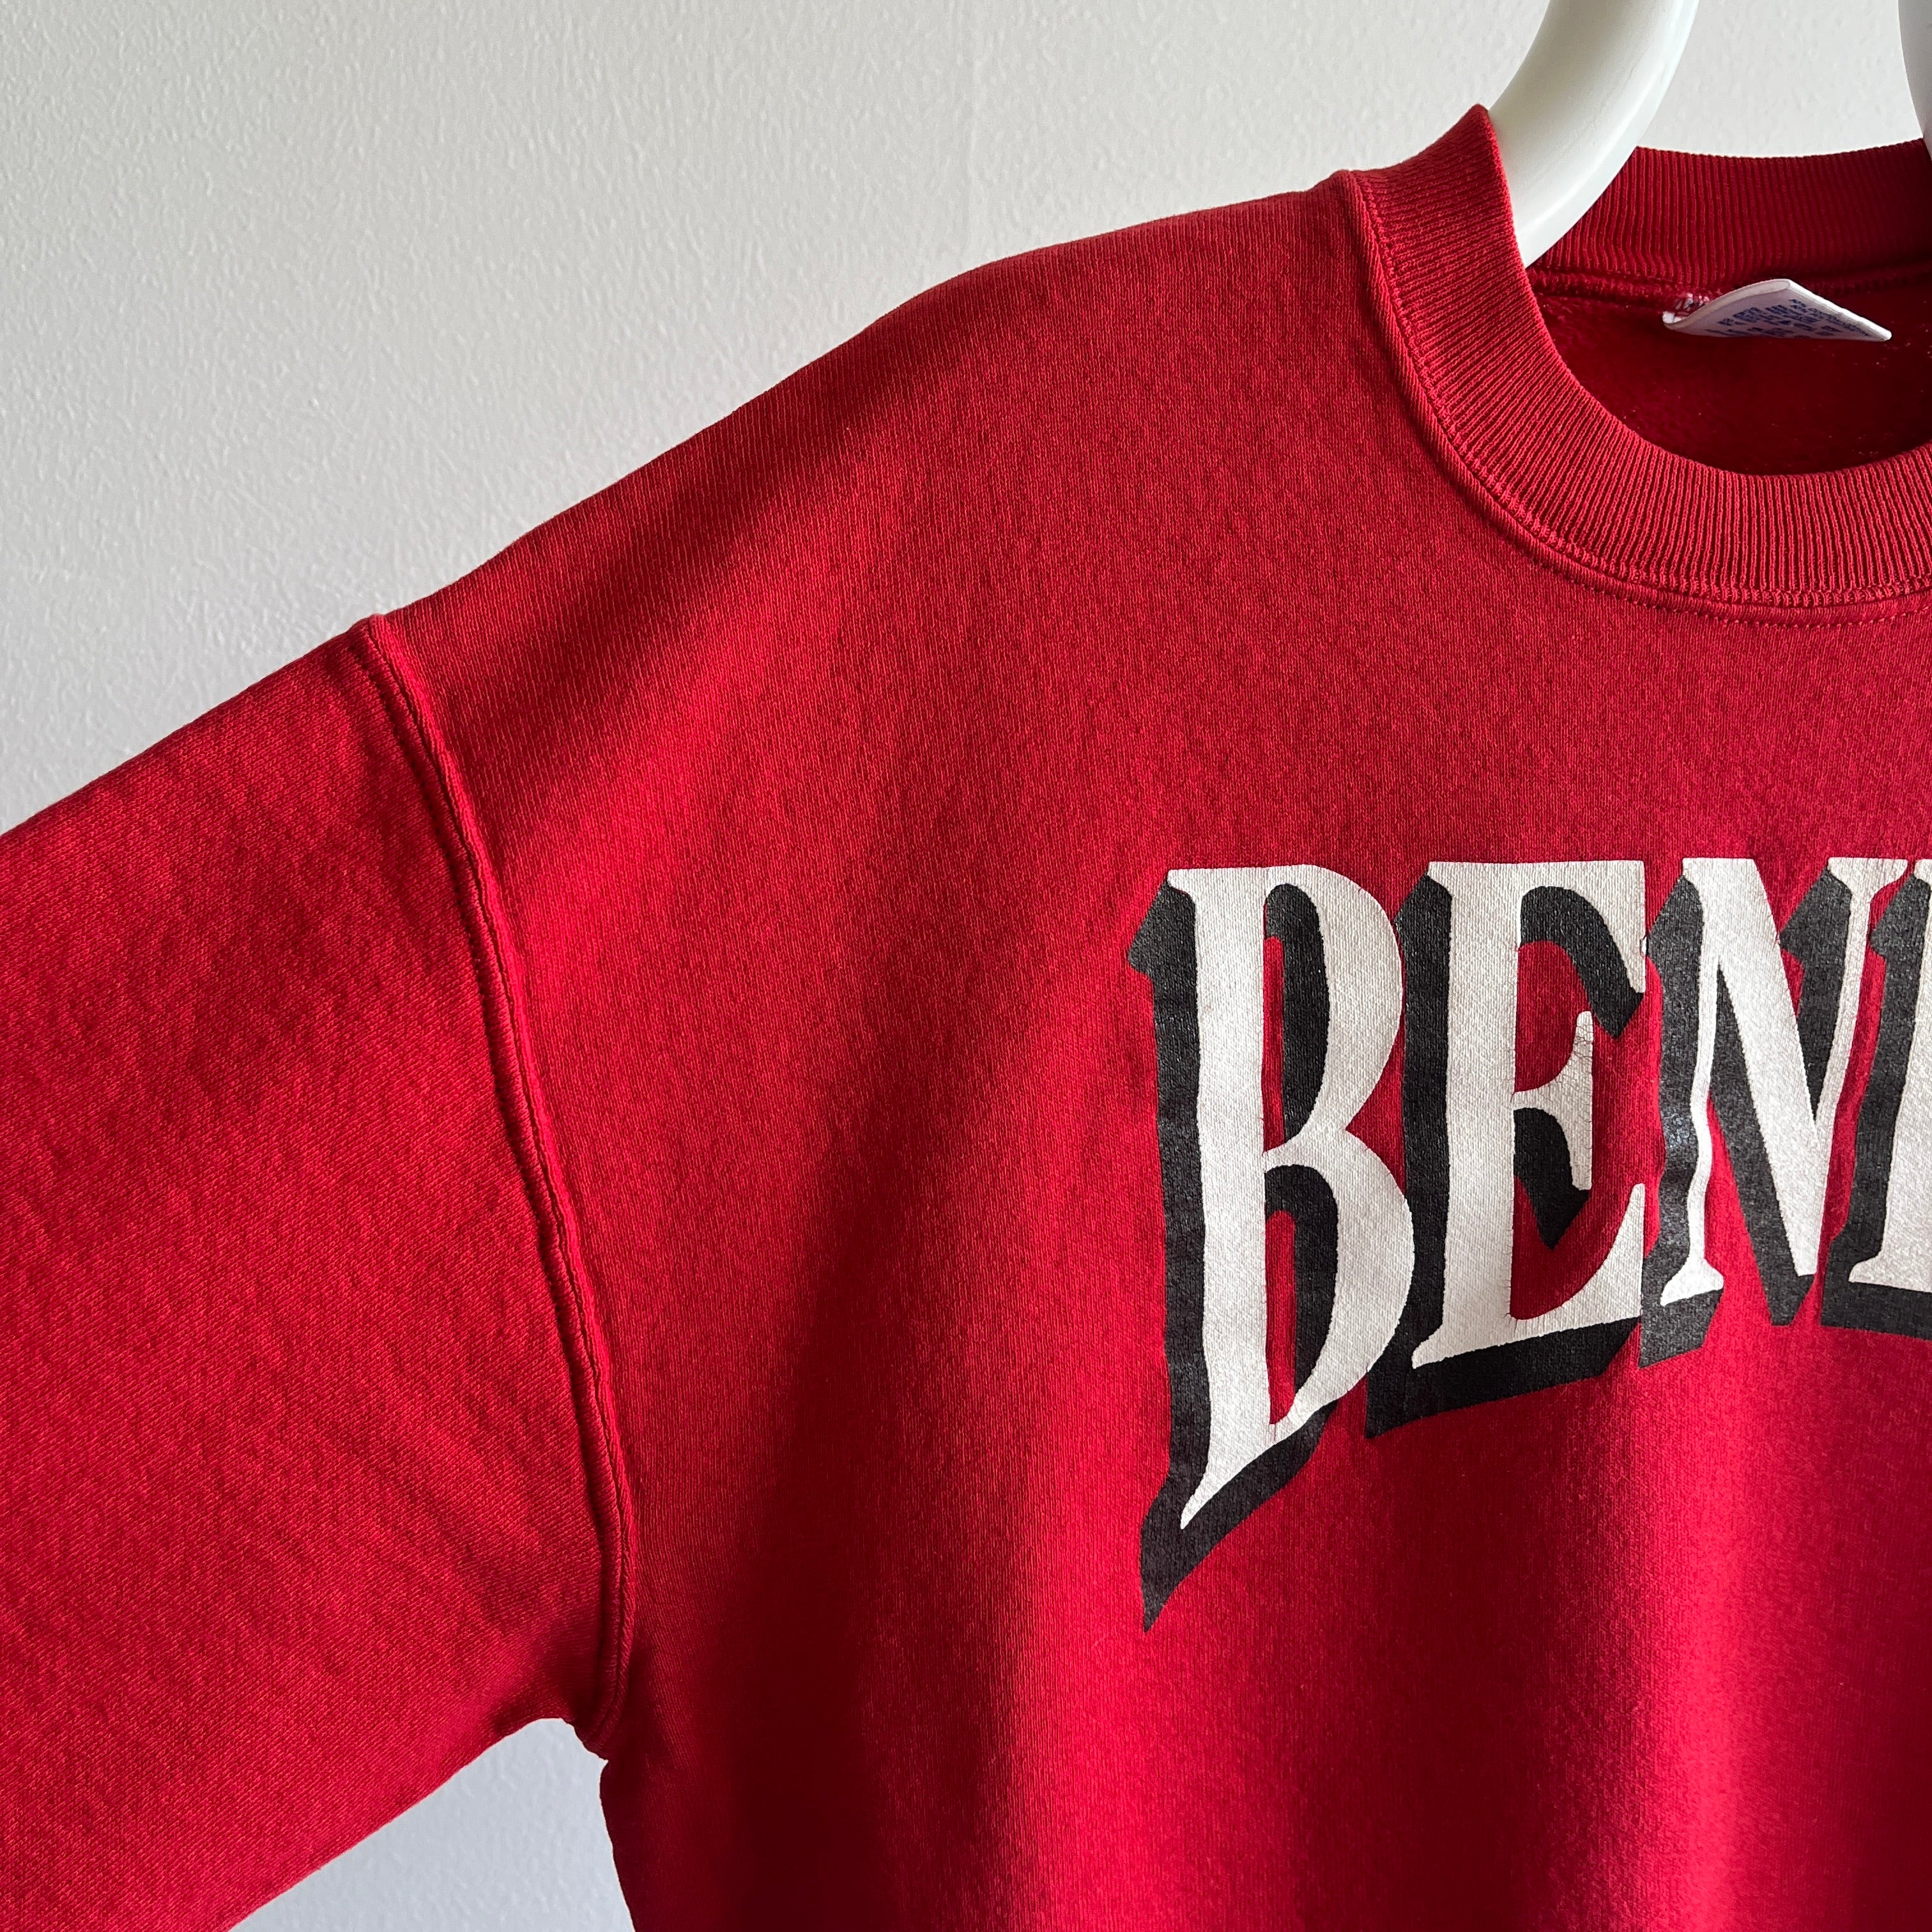 Sweat-shirt Benet (Académie ?) des années 1980 par Jerzees